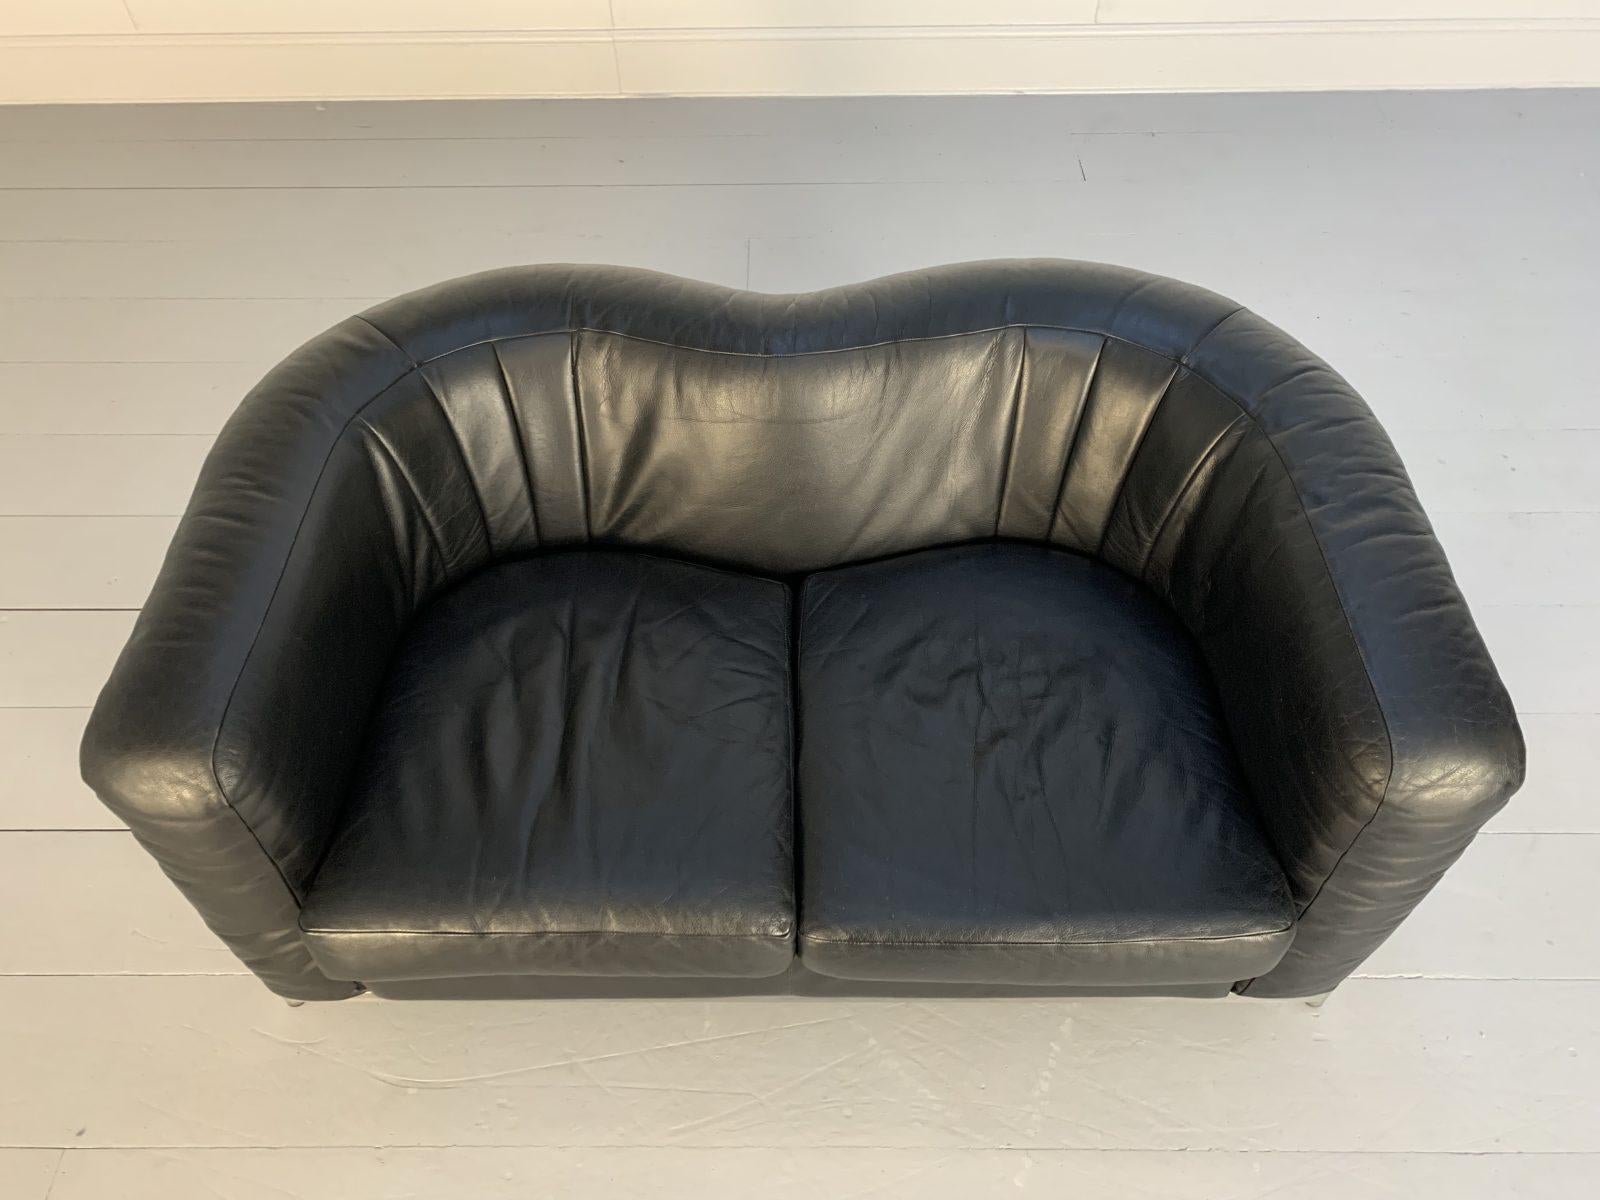 Zanotta “Onda” Sofa – 2-Seat – in Black “Scozia” Leather and Chrome For Sale 2